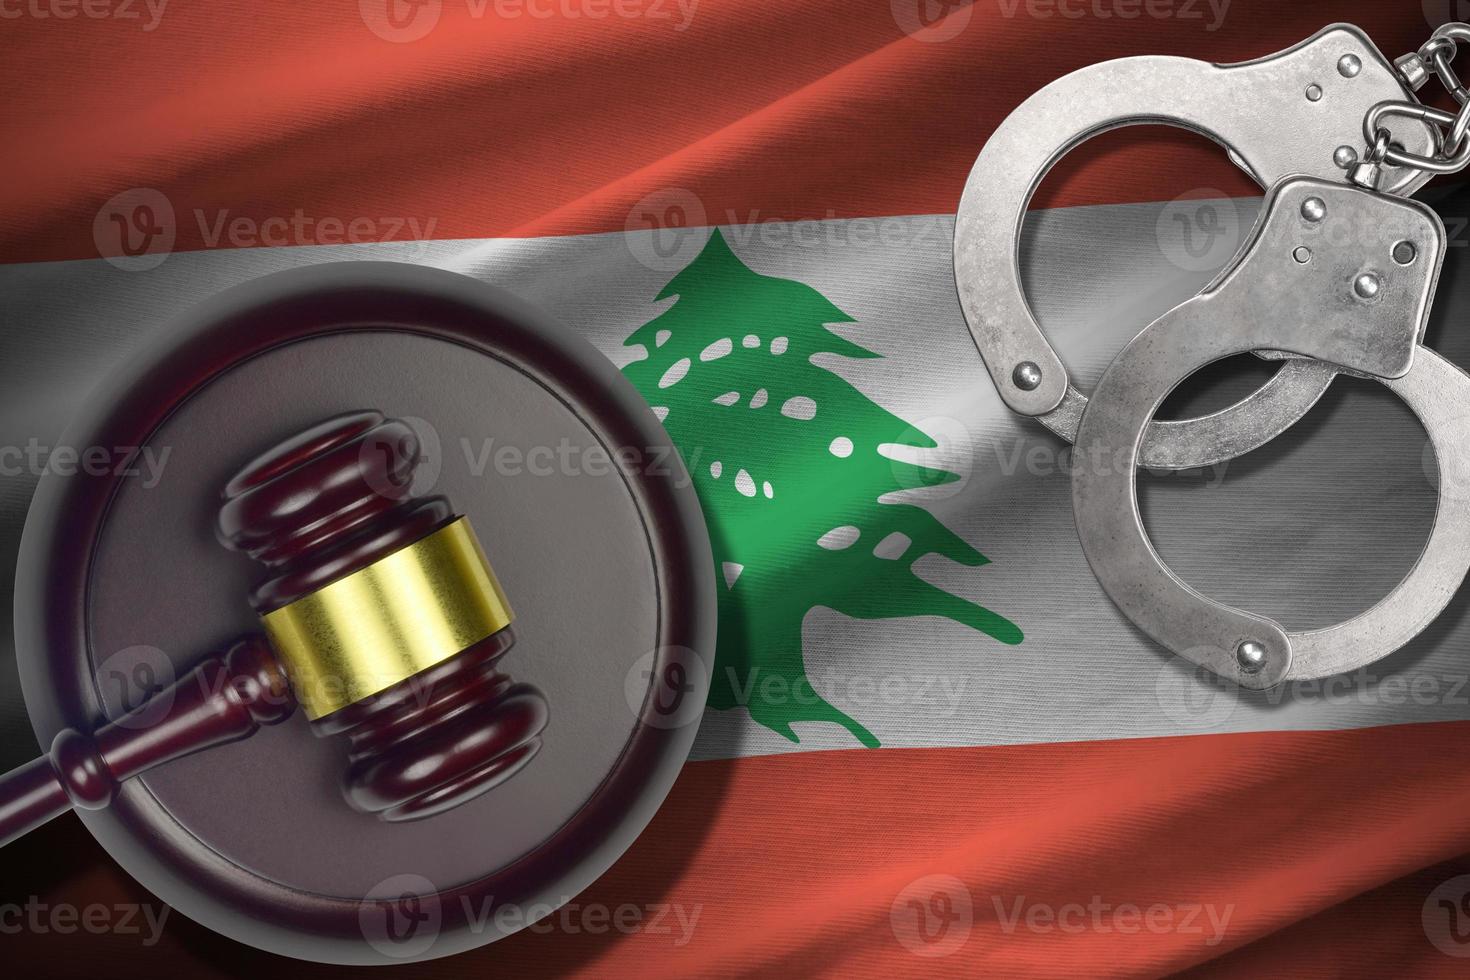 libanon flagga med bedöma klubba och handklovar i mörk rum. begrepp av kriminell och bestraffning, bakgrund för dom ämnen foto